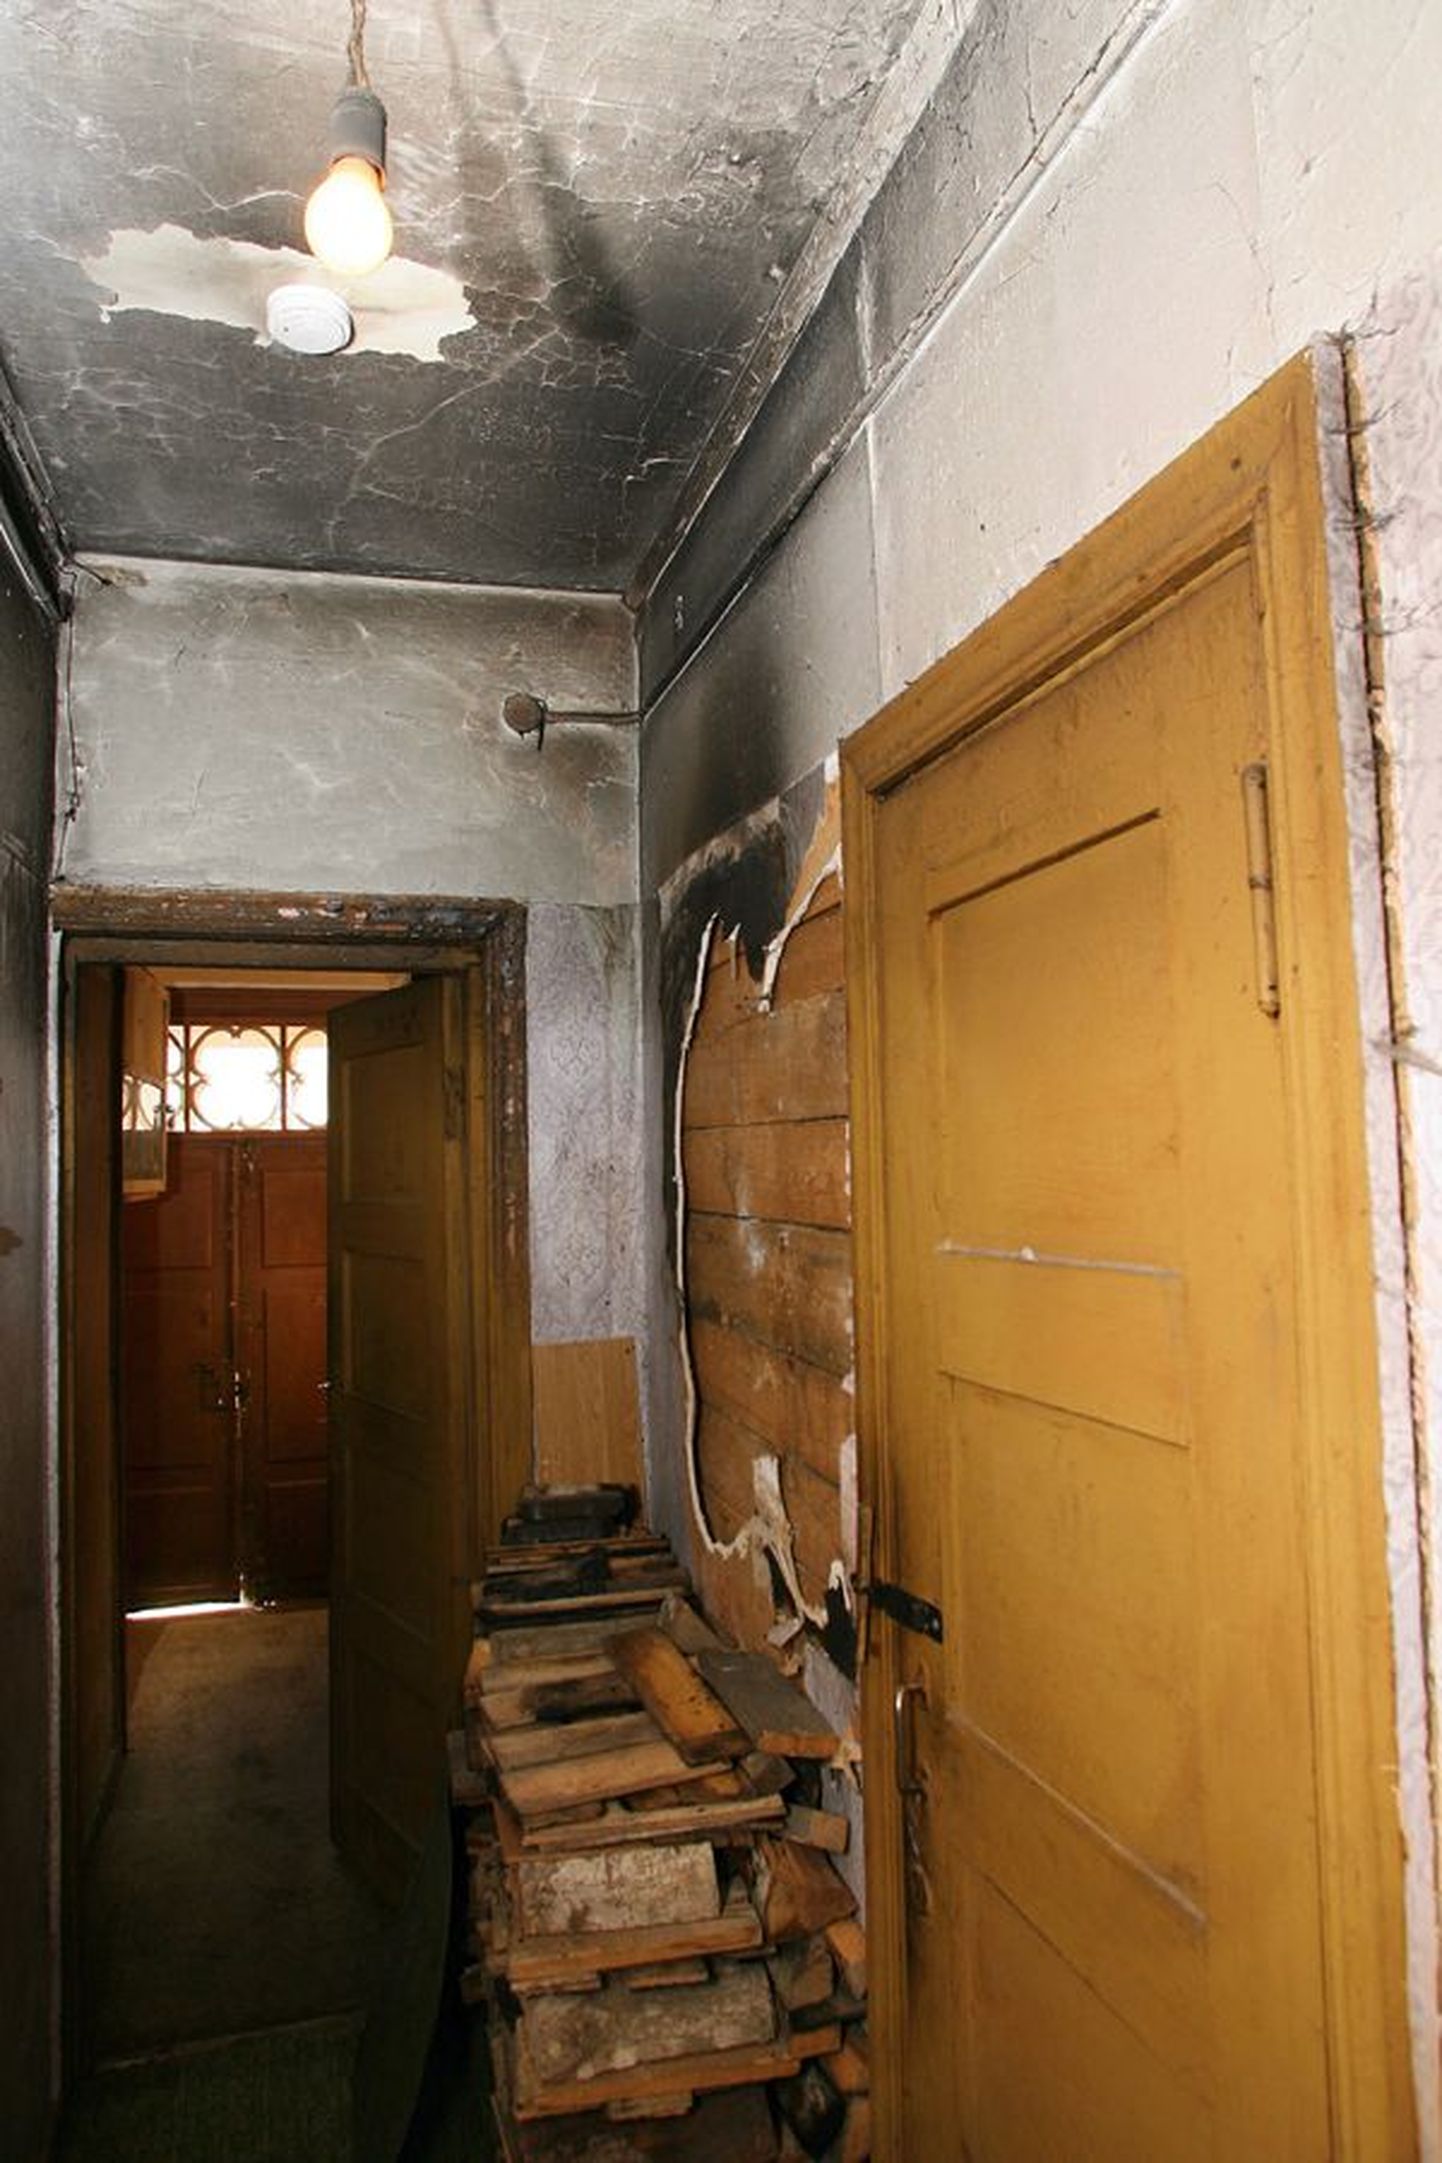 Viimane kahtlane põleng oli vanalinnas 2. oktoobril, kui ühe Munga tänava maja trepikojas läksid põlema ahjupuud. Paar päeva hiljem vahistas politsei süütamistes kahtlustatavana samas majas elava Urmo.